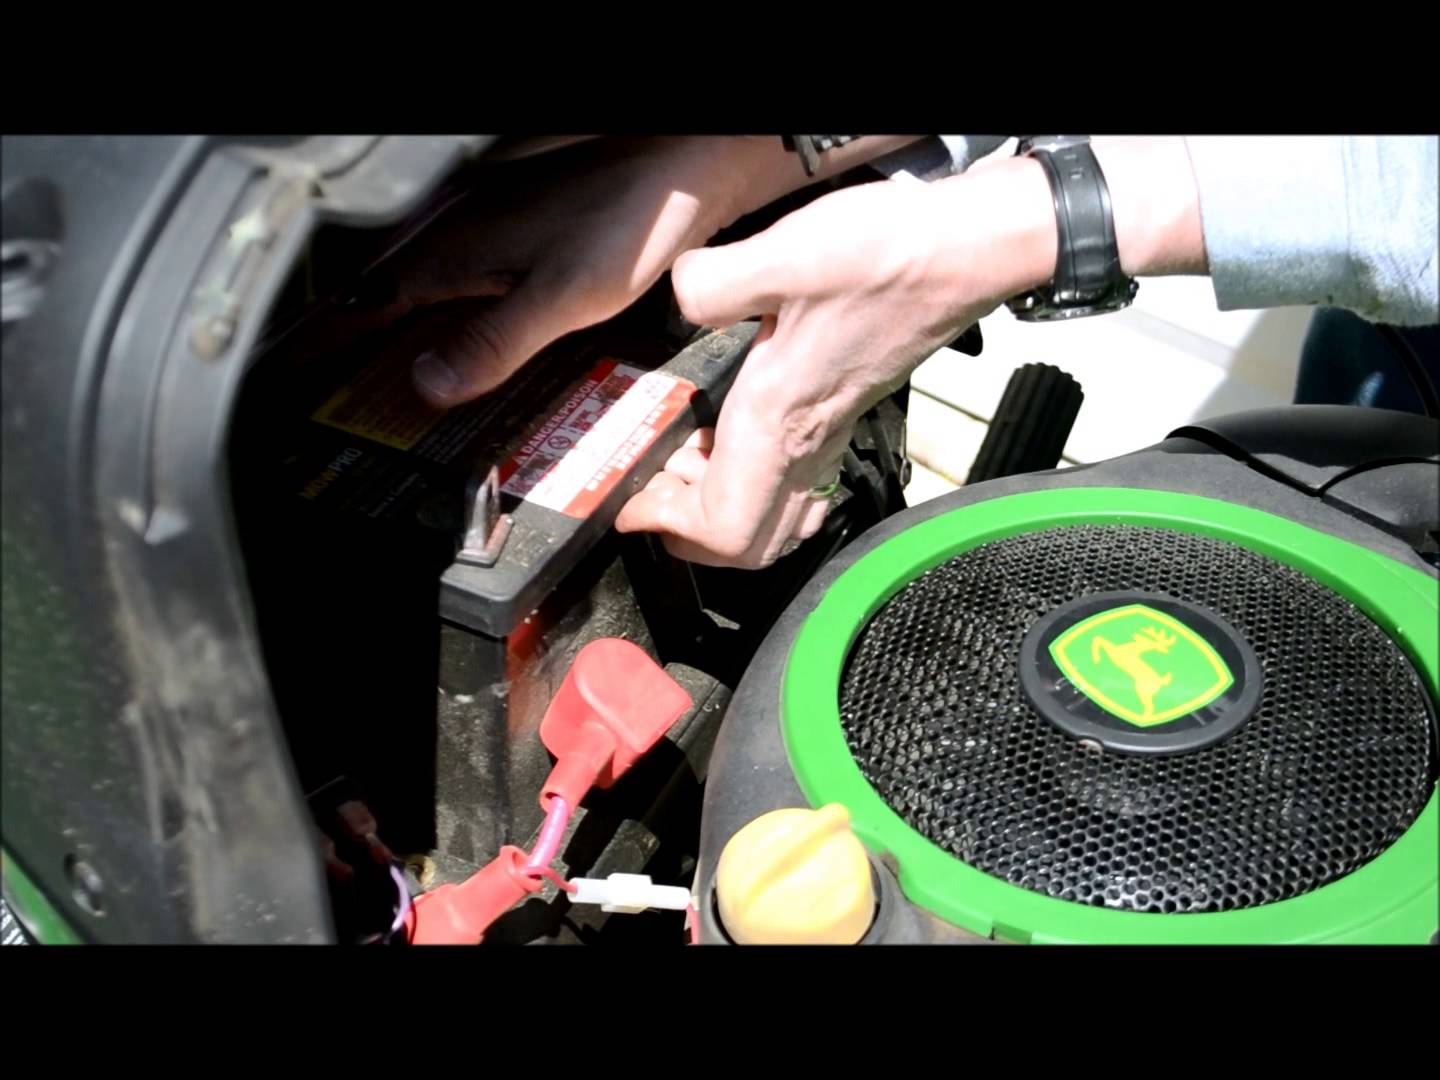 John Deere Lawn Tractor Battery Change: A guide - YouTube